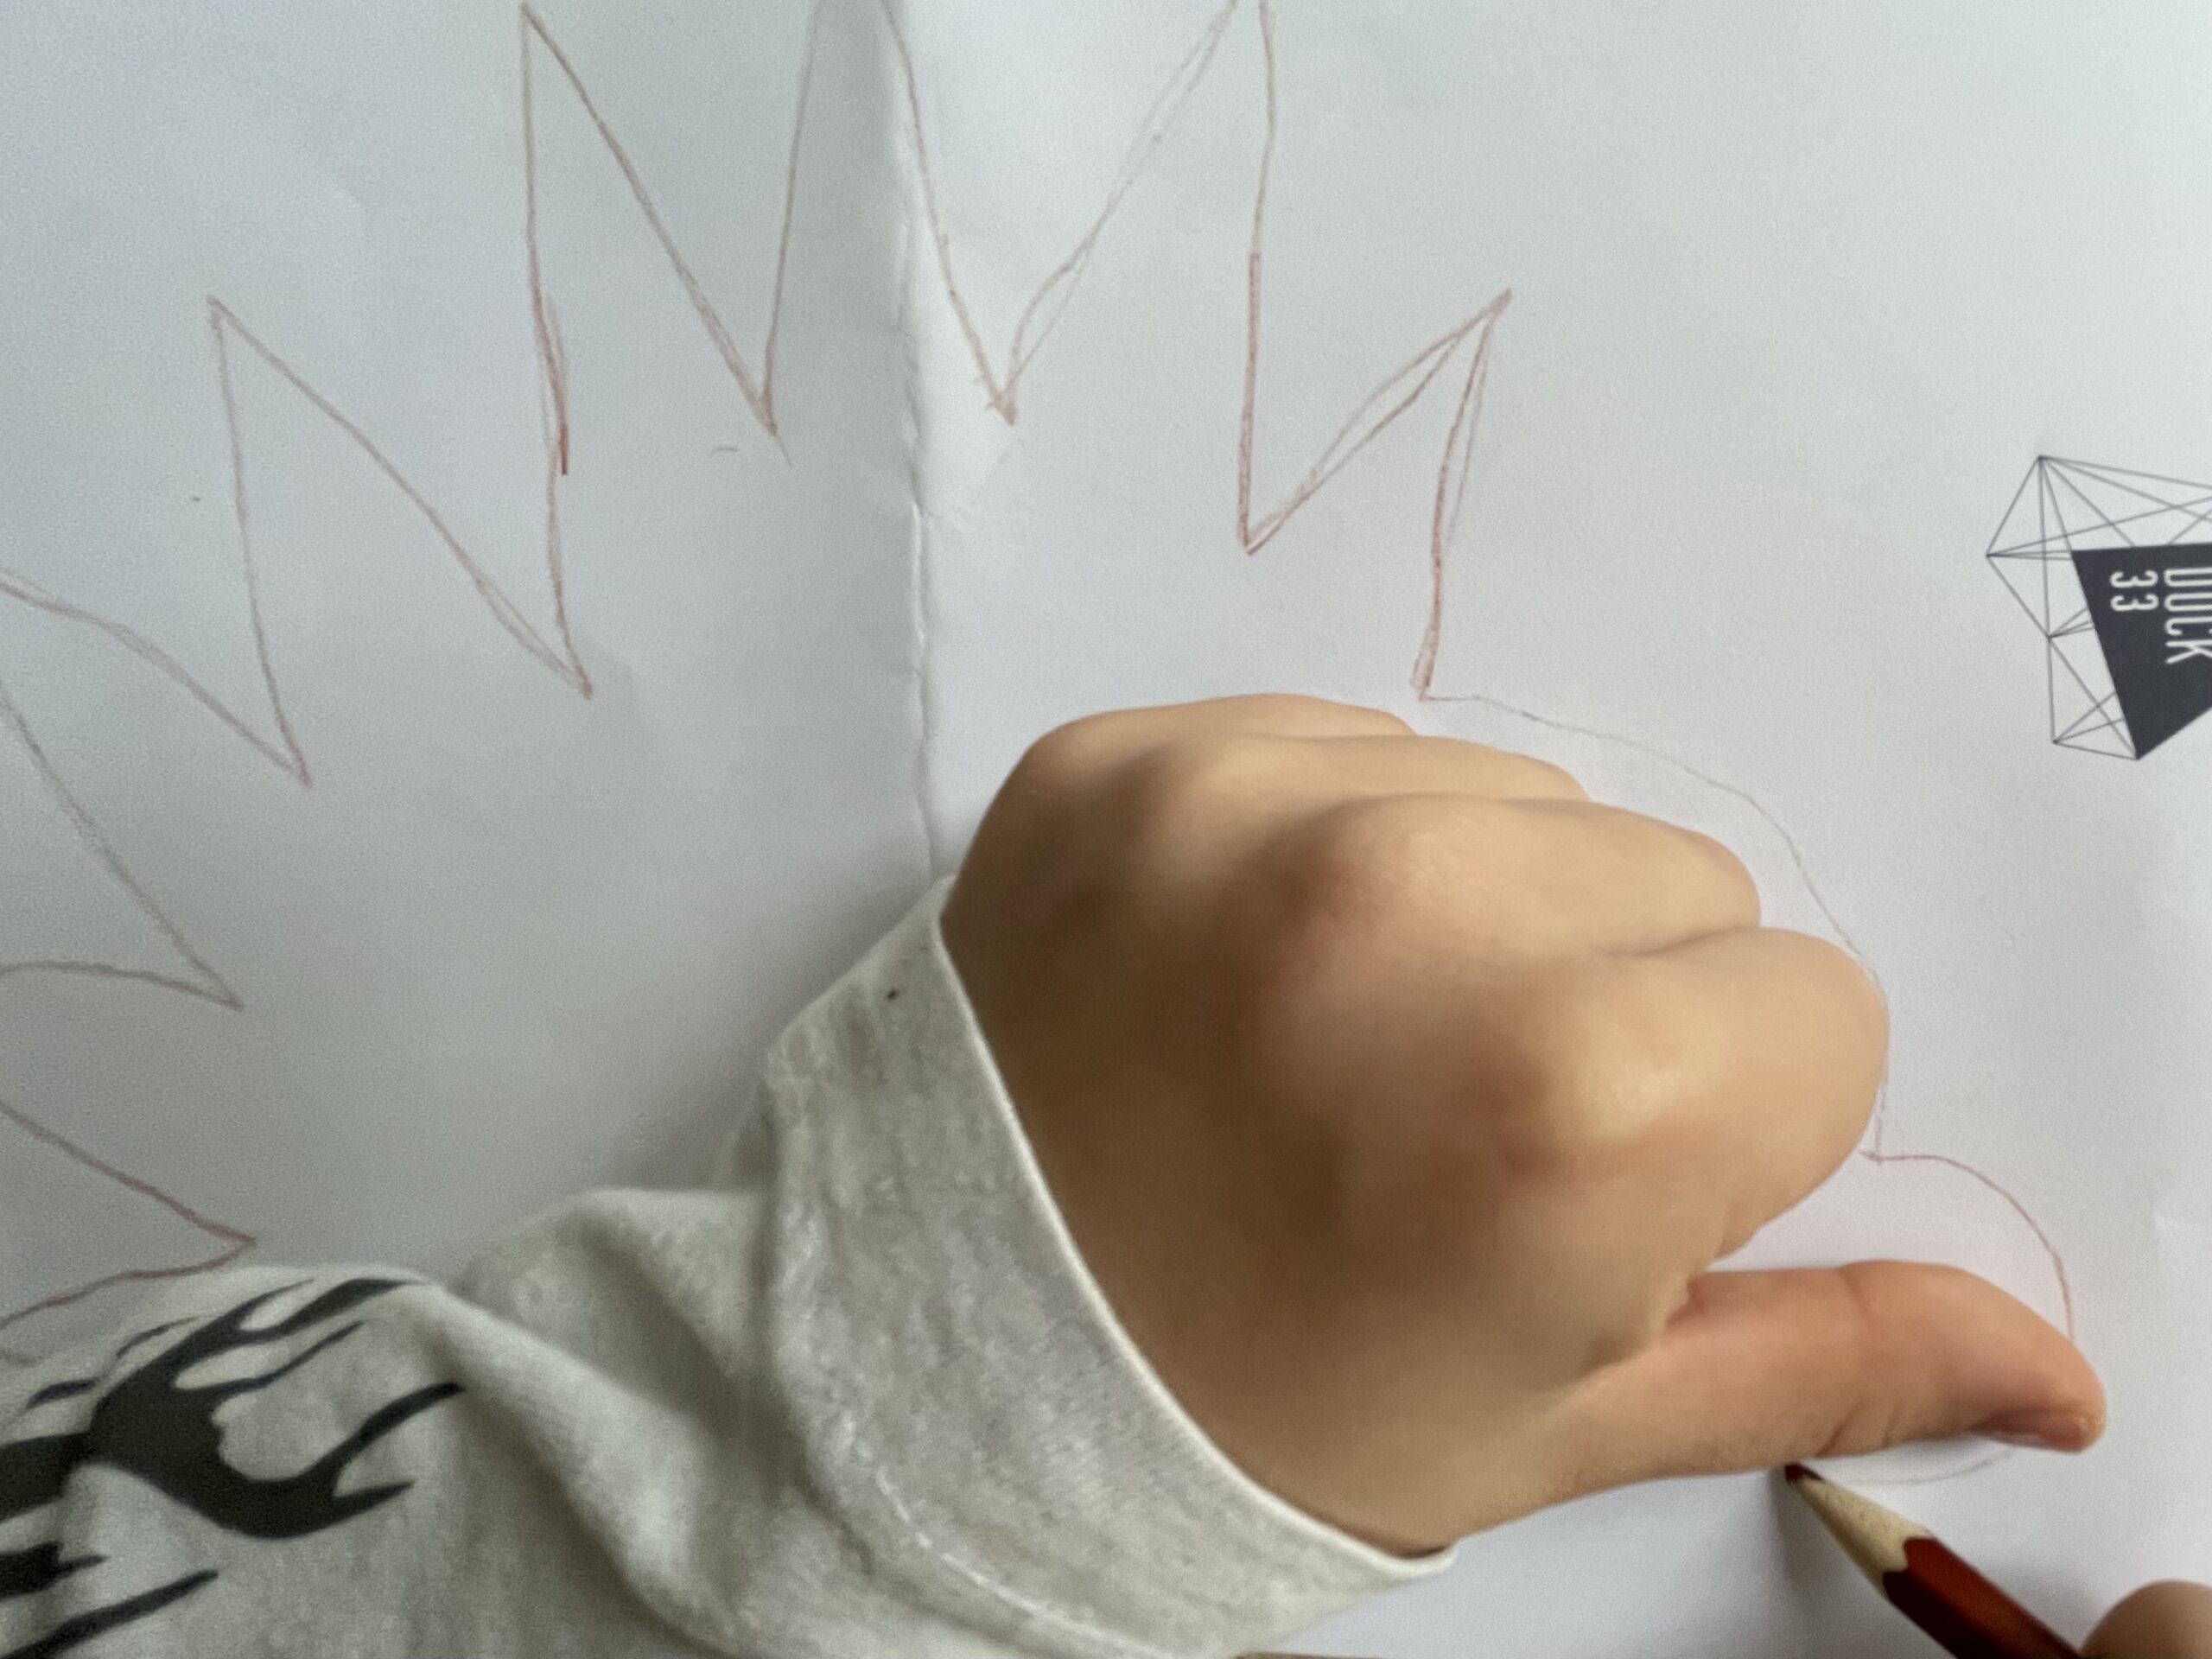 Bild zum Schritt 8 für das Bastel- und DIY-Abenteuer für Kinder: 'Umrandet nun die Faust mit einem Stift und verbindet danach...'